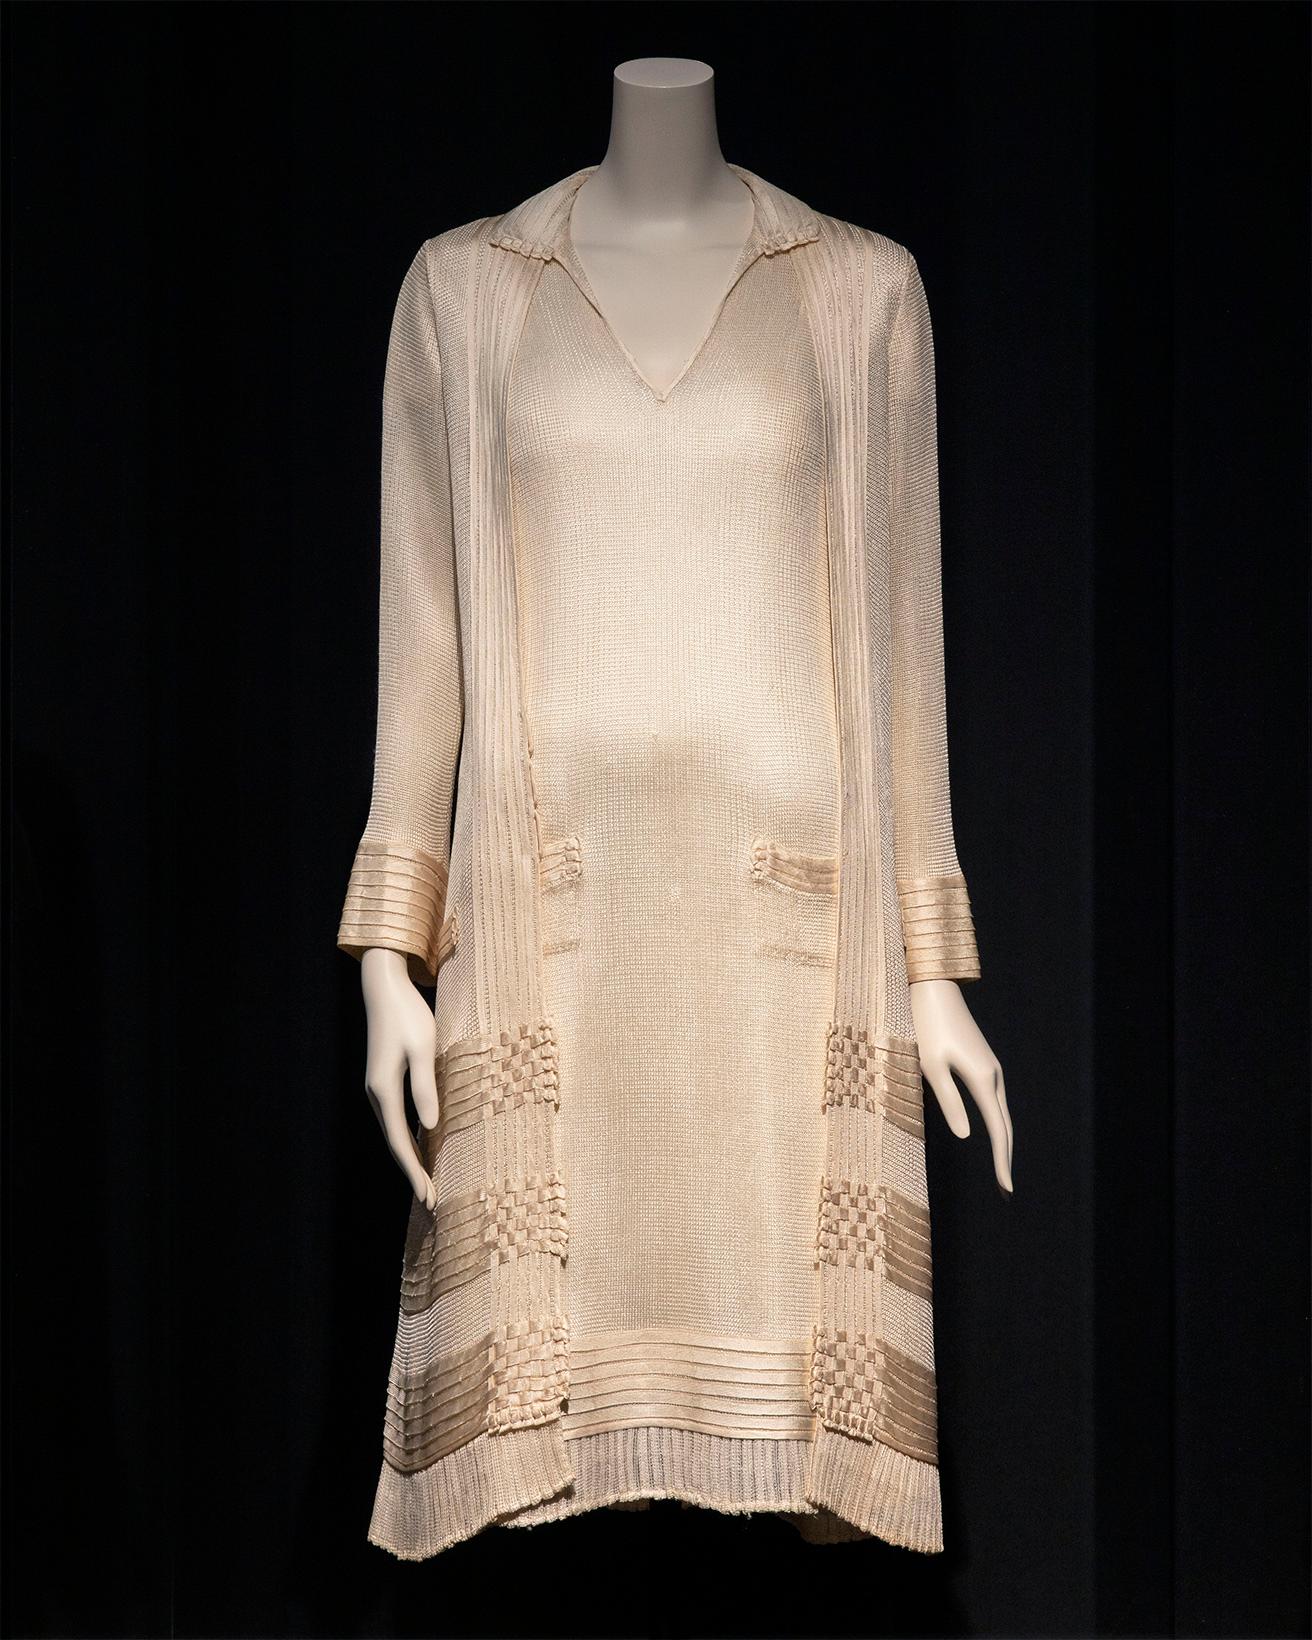 男性用下着の素材とされていたアイボリーのシルクジャージーを、女性用アイテムの素材へと転換した。「ドレスとジャケットのアンサンブル」（1922-1928年）。（パリ、パトリモアンヌ・シャネル所蔵）